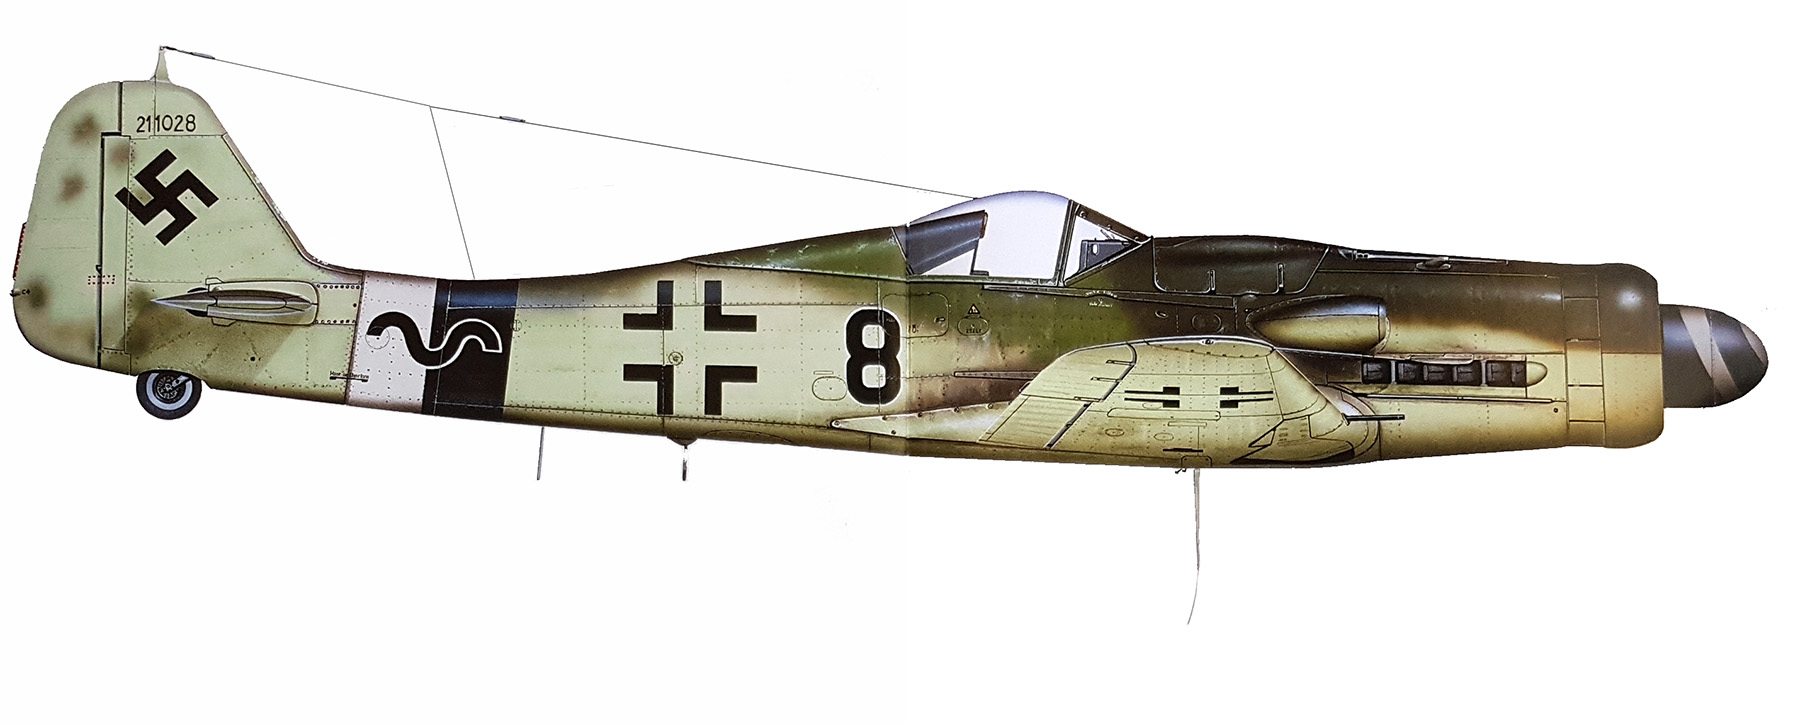 Asisbiz Focke Wulf Fw 190d9 14 Jg26 Black 8 Werner Zech Wnr 211028